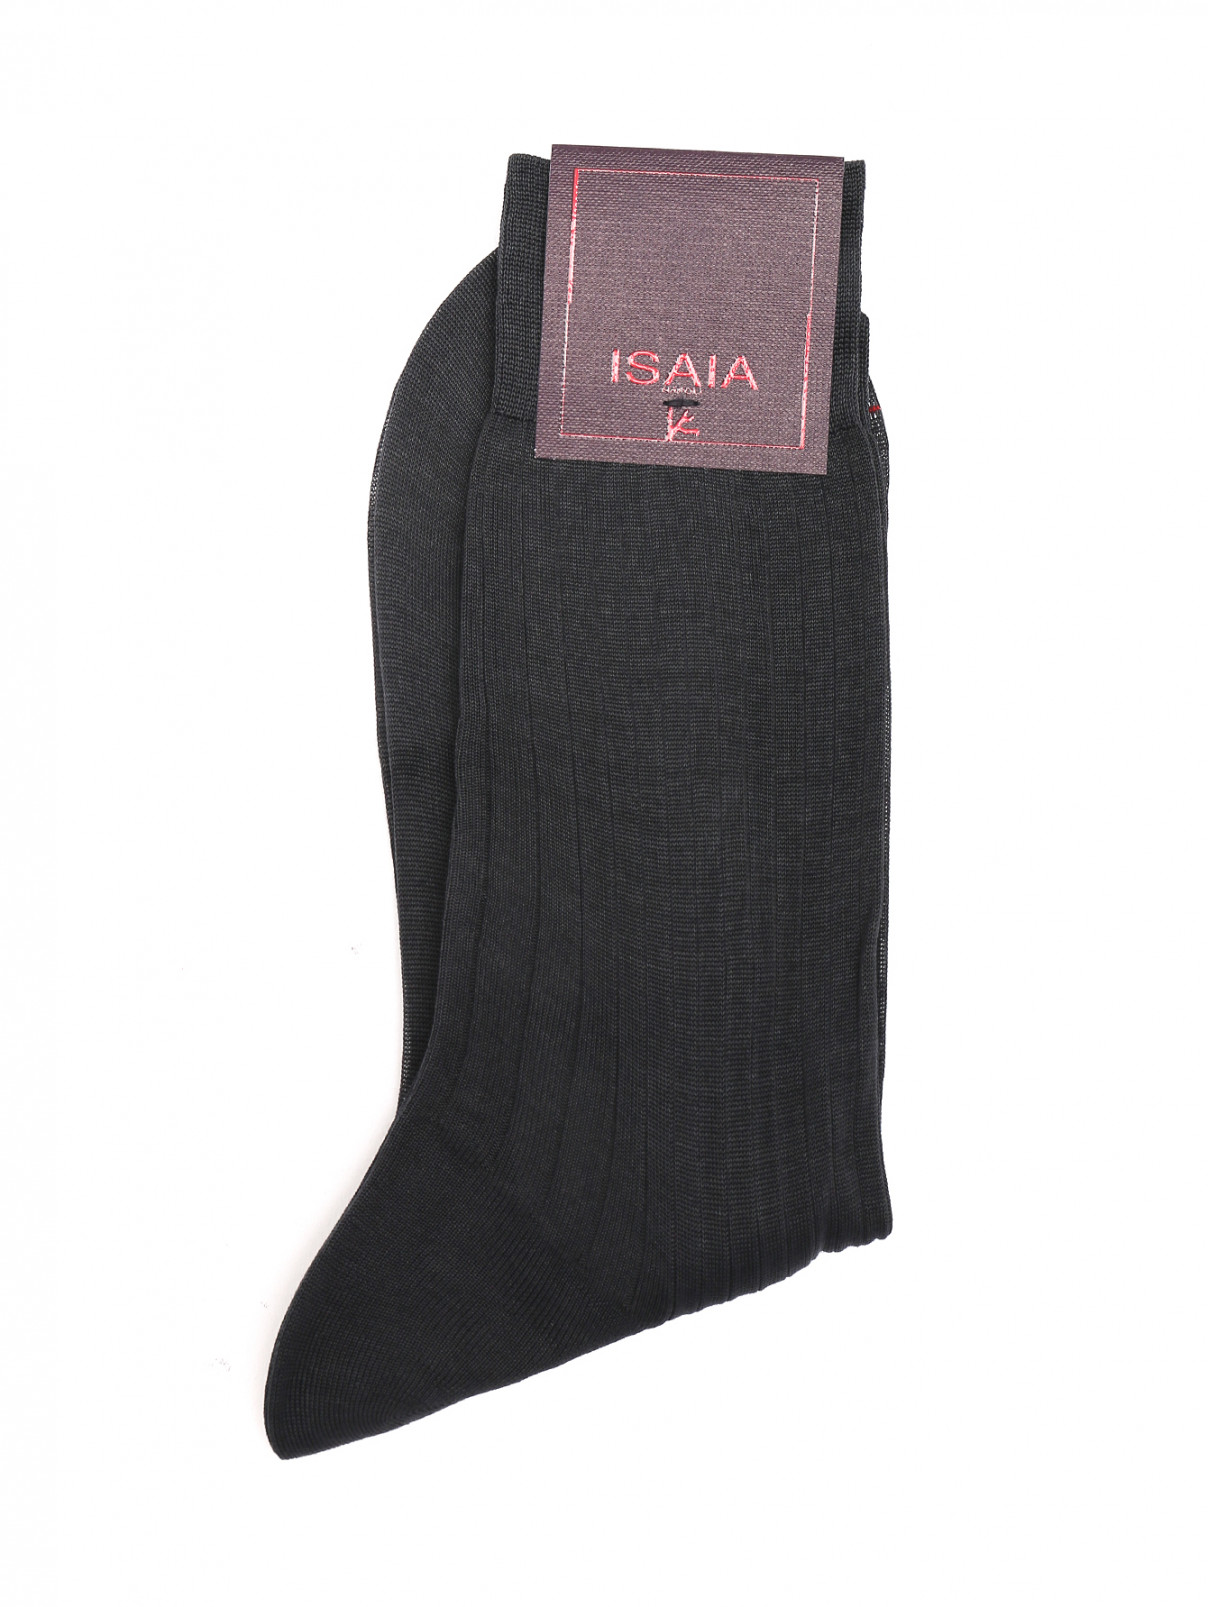 Носки из хлопка с принтом Isaia  –  Общий вид  – Цвет:  Серый